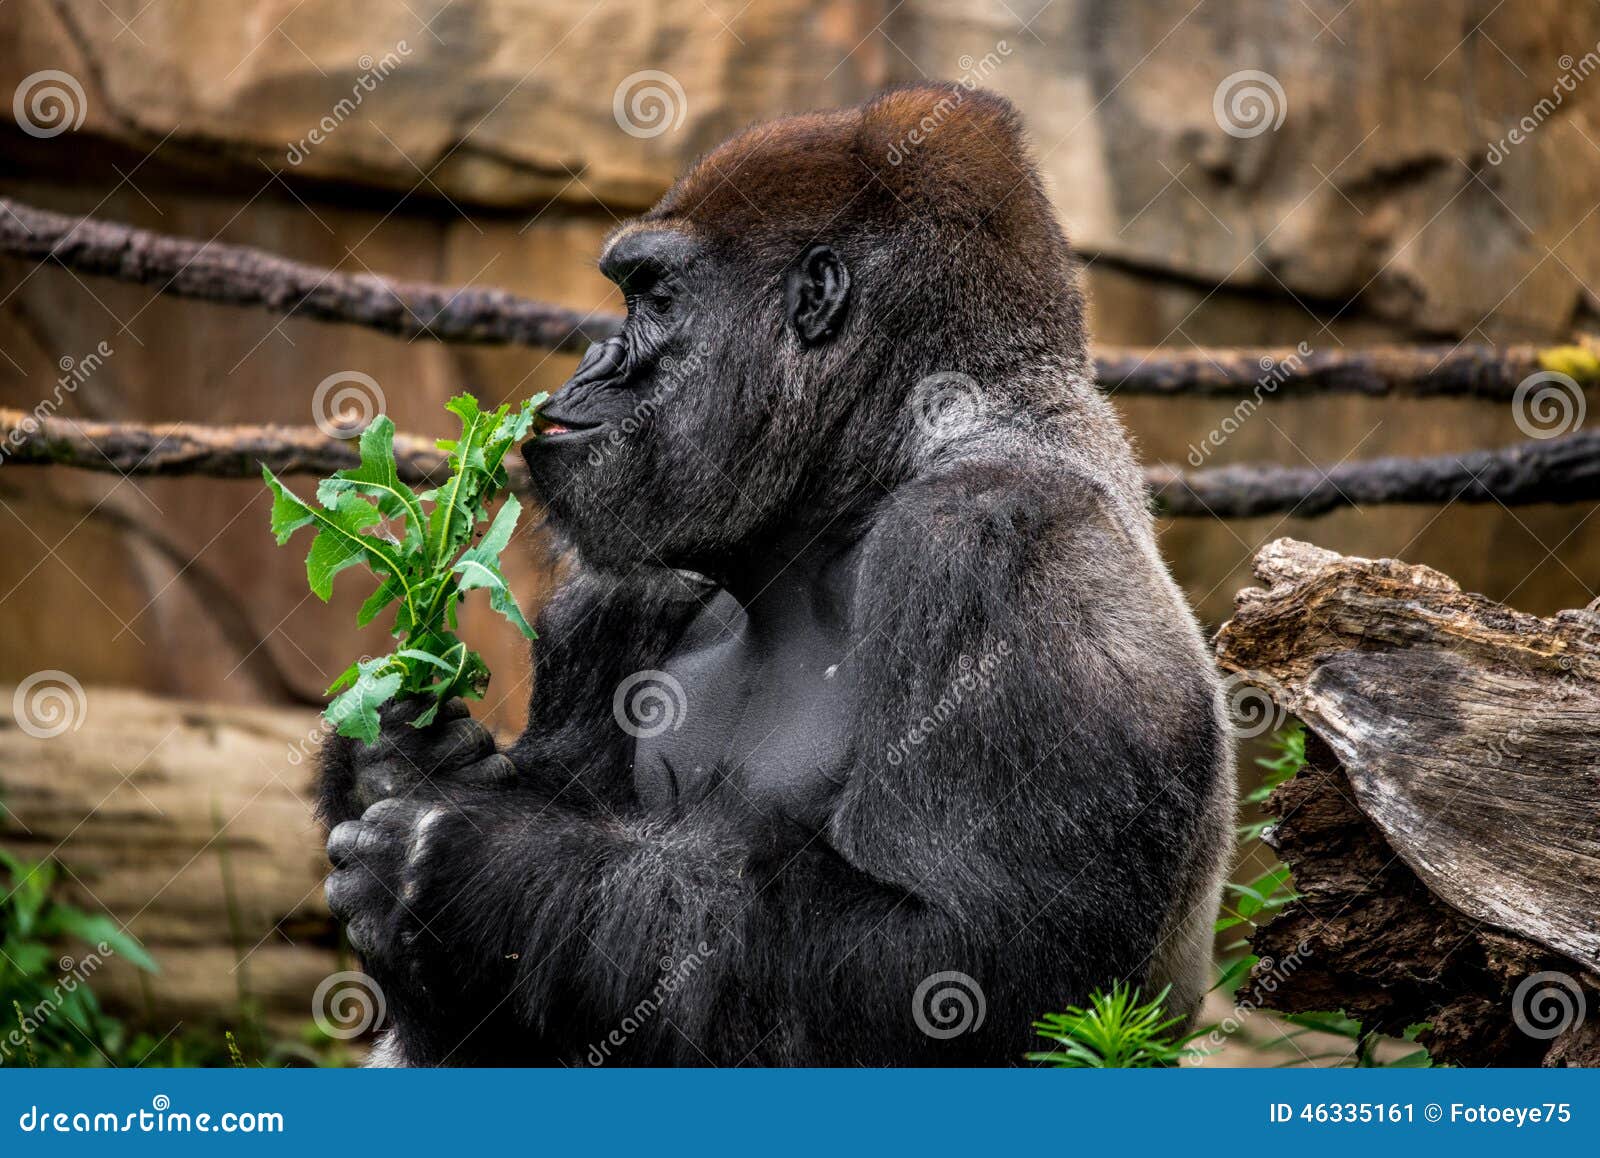 gorilla primate sniffing plant